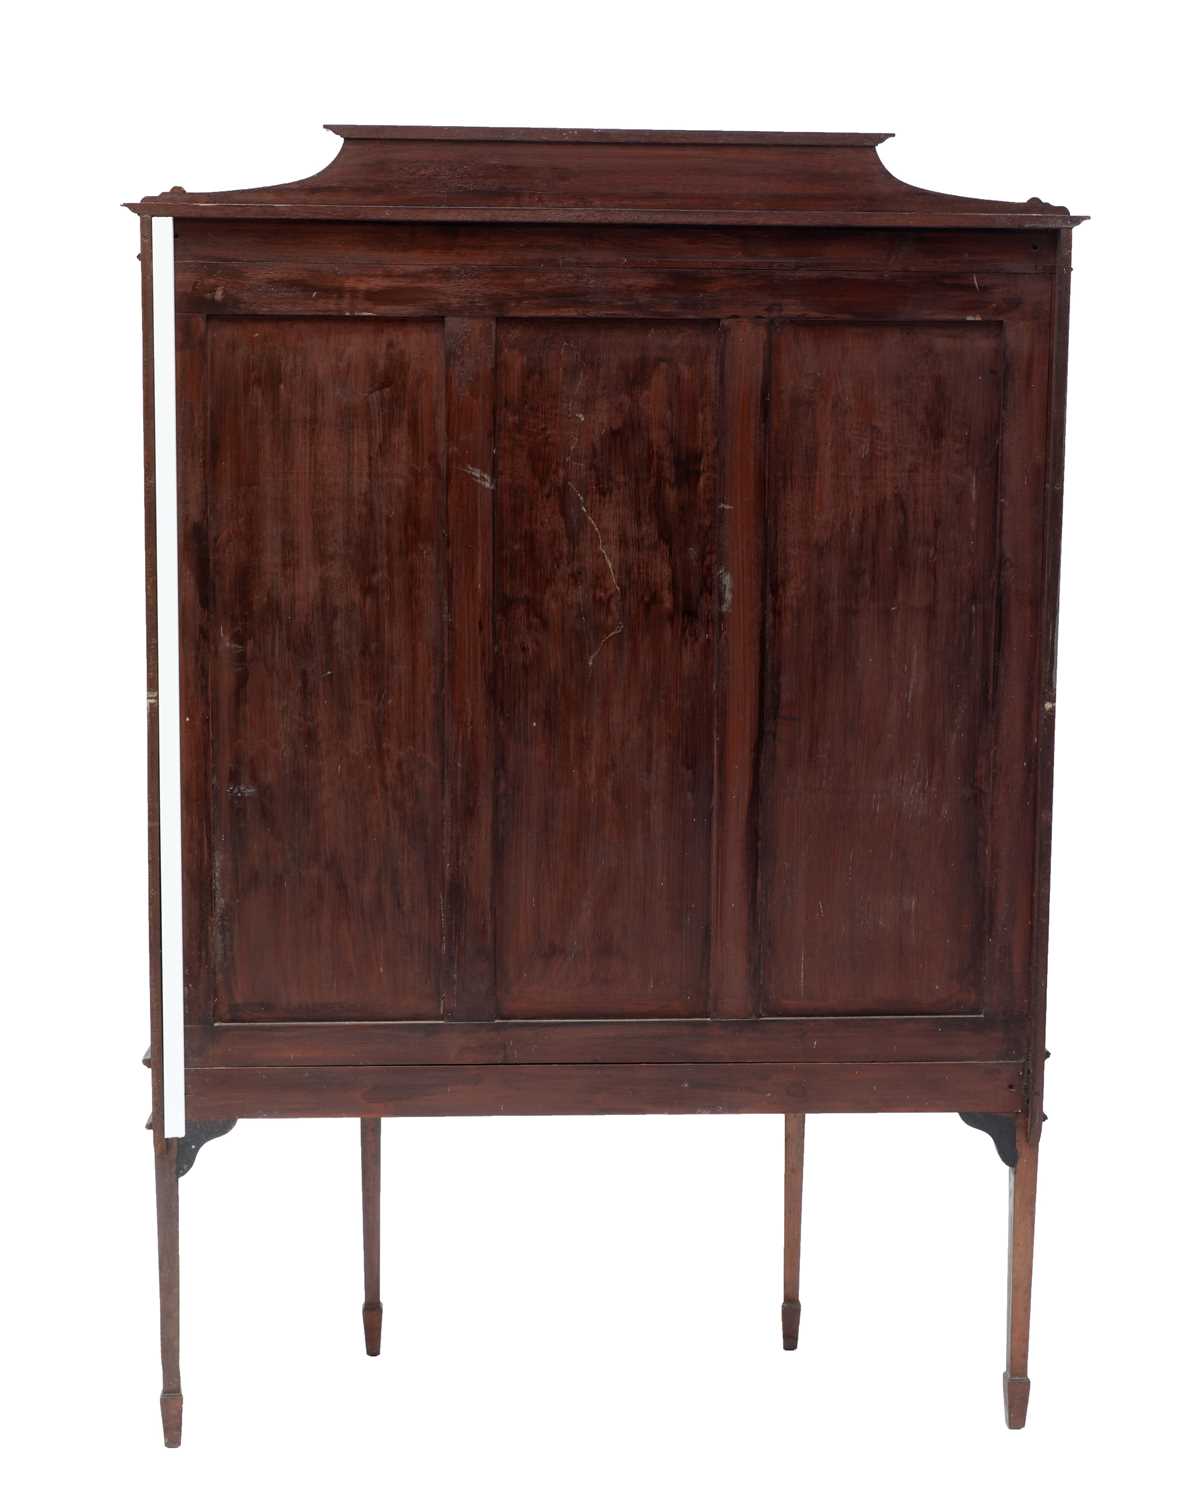 An Edwardian strung mahogany display cabinet - Image 3 of 3